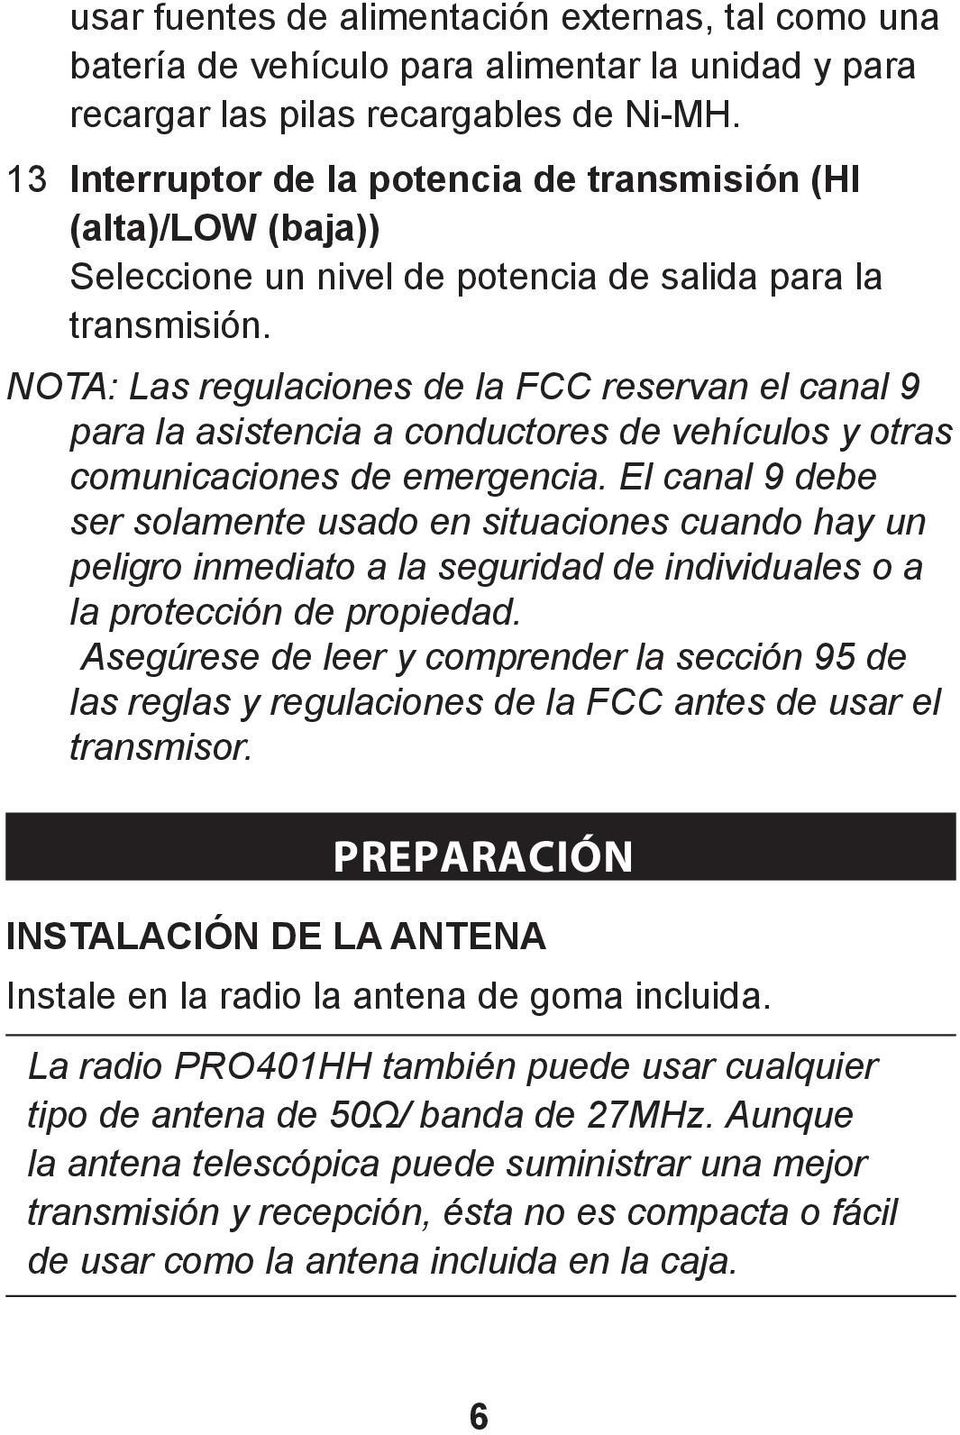 NOTA: Las regulaciones de la FCC reservan el canal 9 para la asistencia a conductores de vehículos y otras comunicaciones de emergencia.